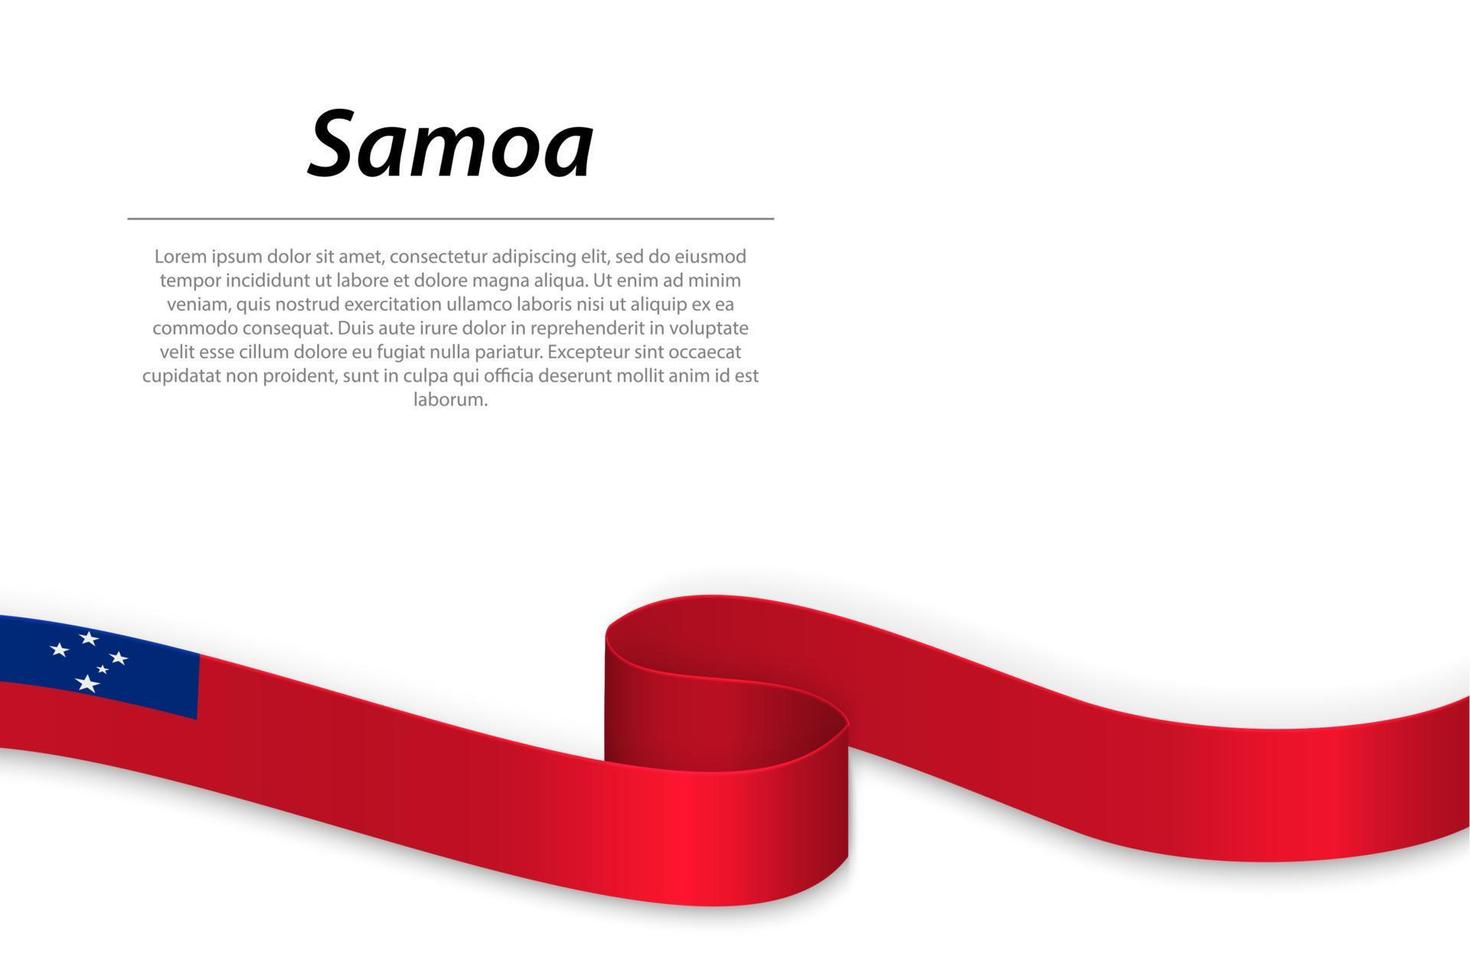 schwenkendes band oder banner mit flagge von samoa vektor